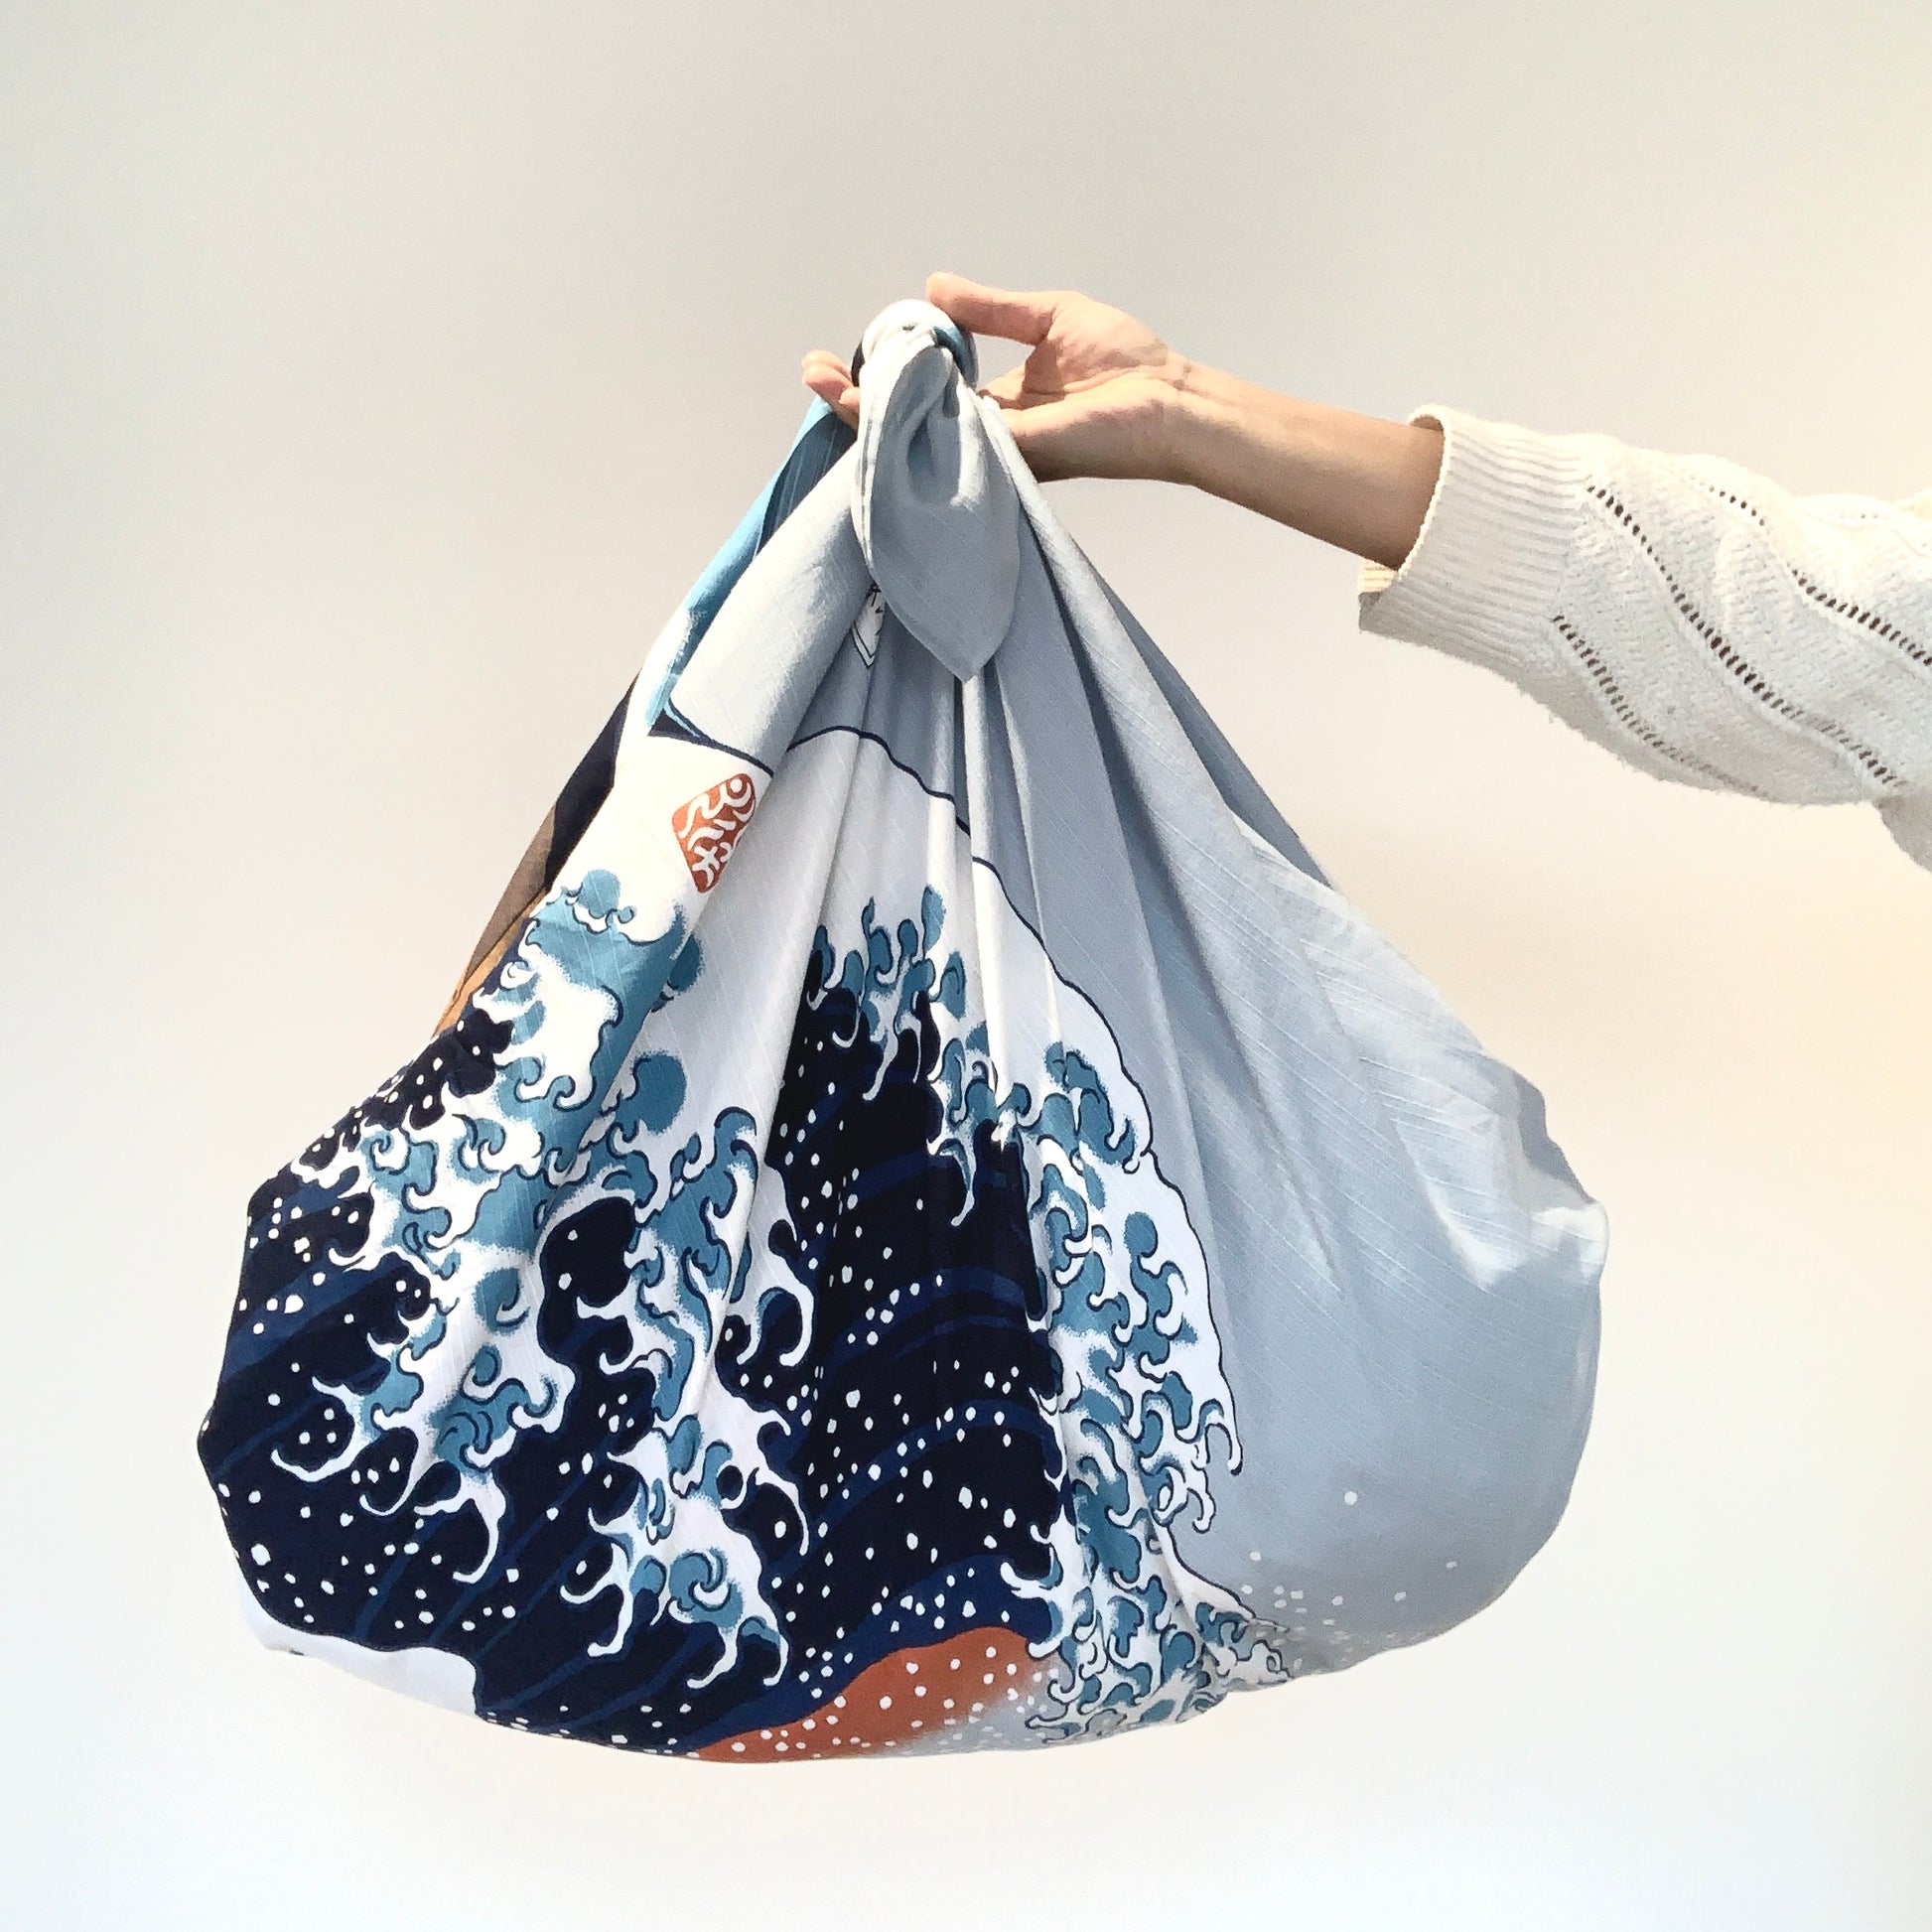 Furoshiki bag with Great Wave Hokusai print